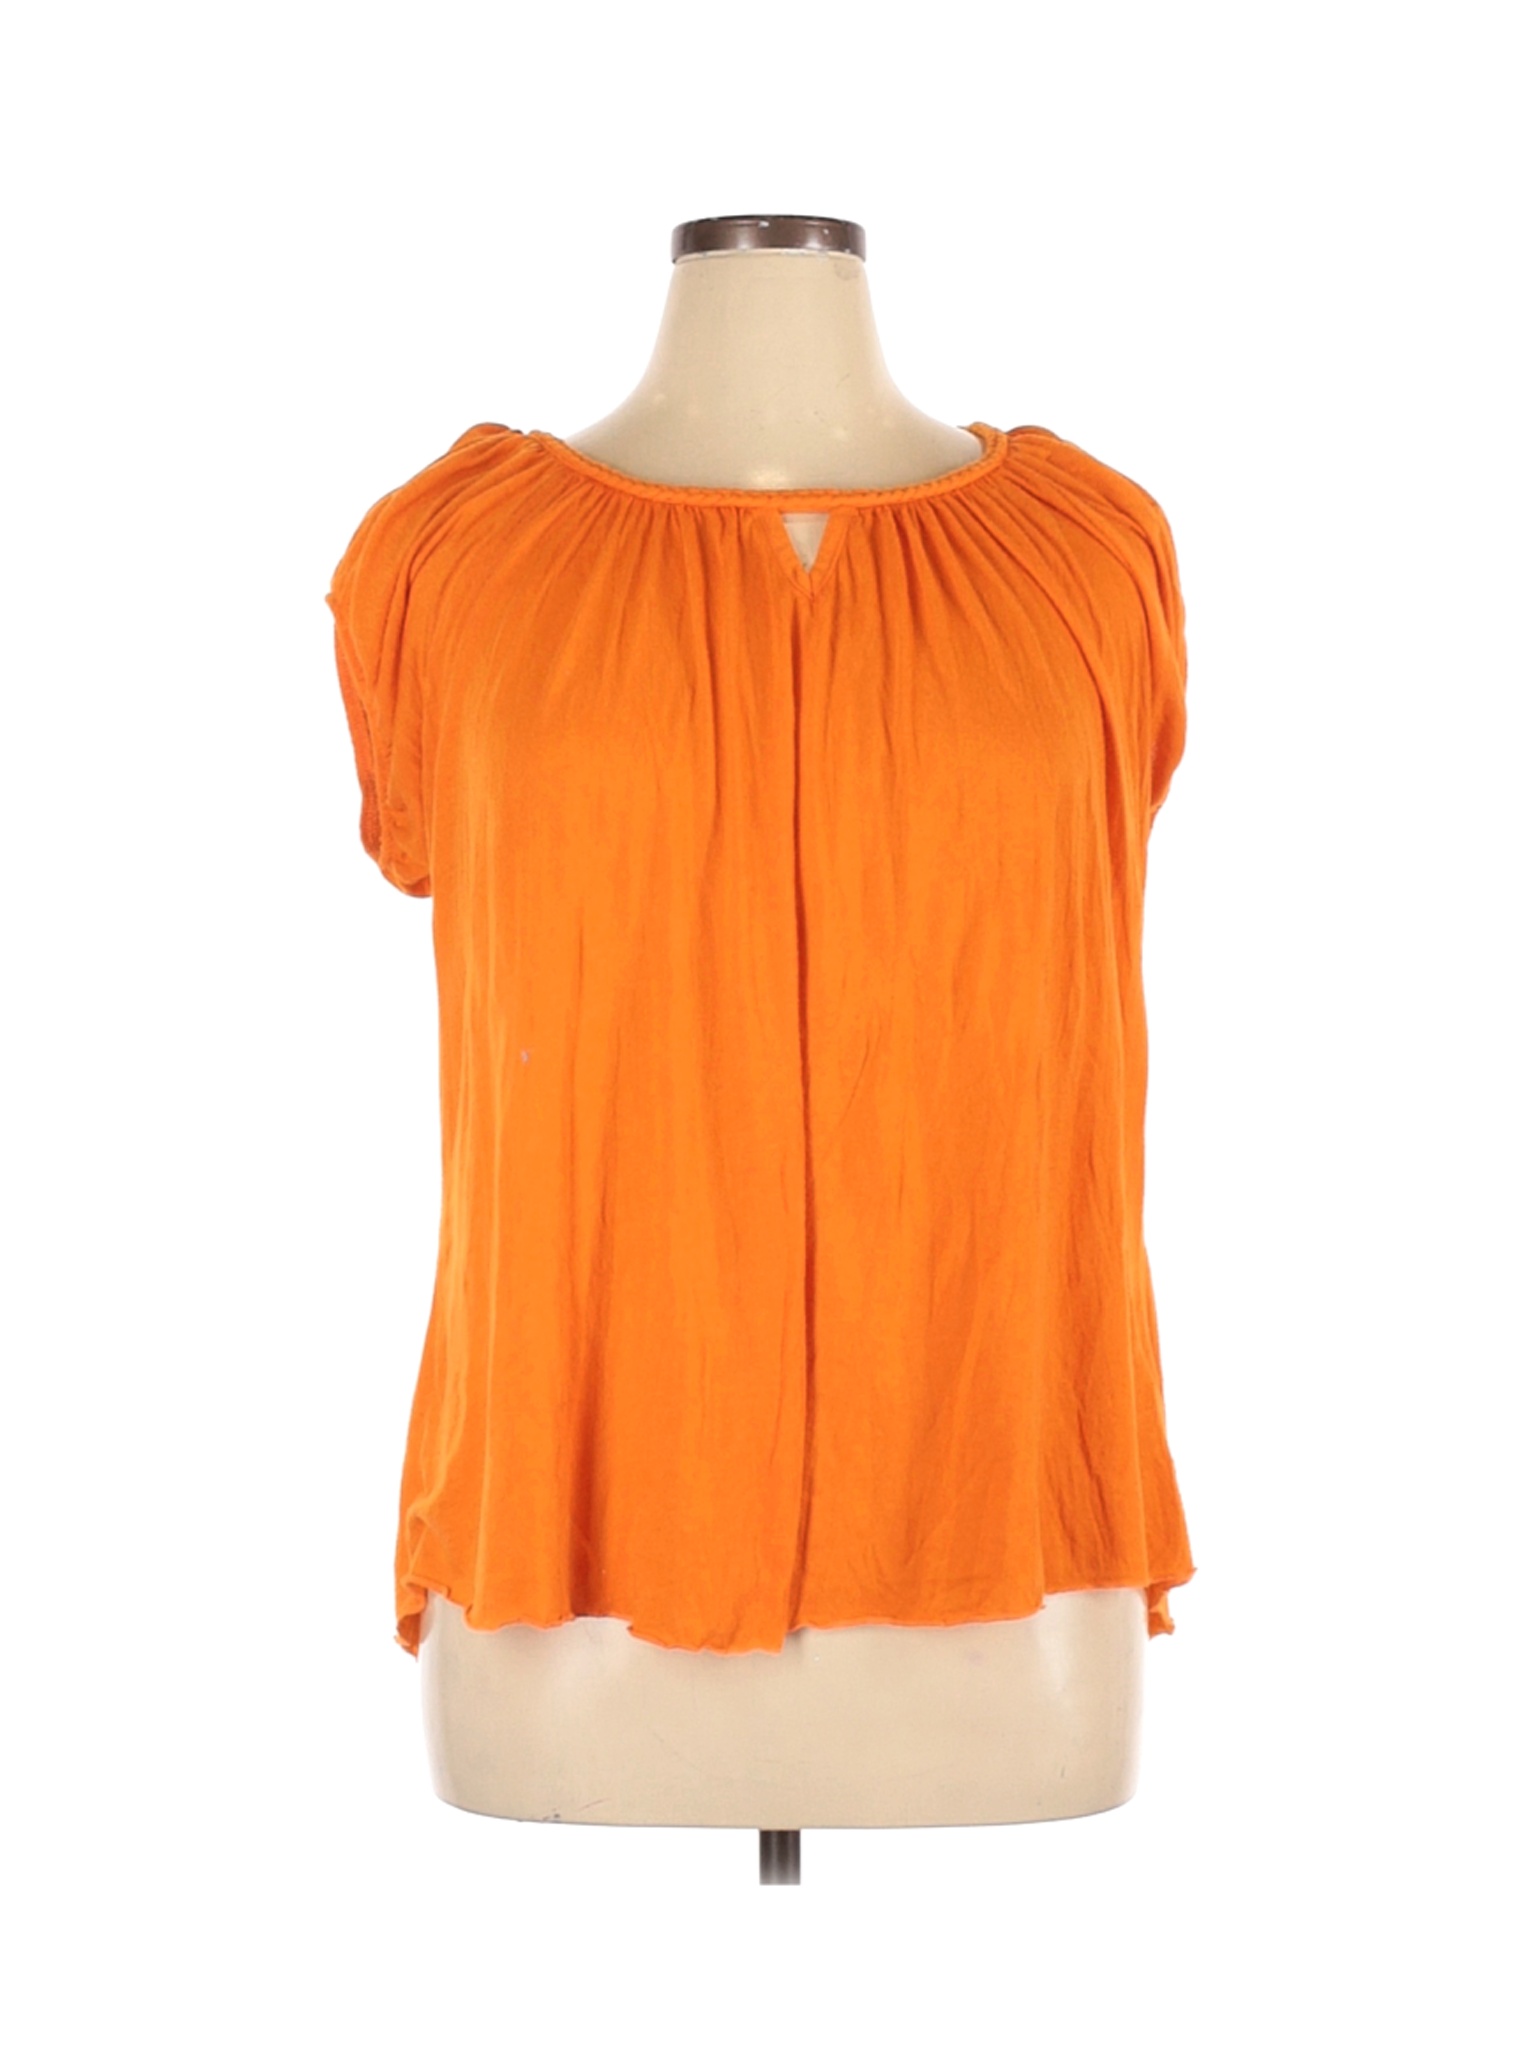 Assorted Brands Women Orange Short Sleeve Top 1X Plus | eBay